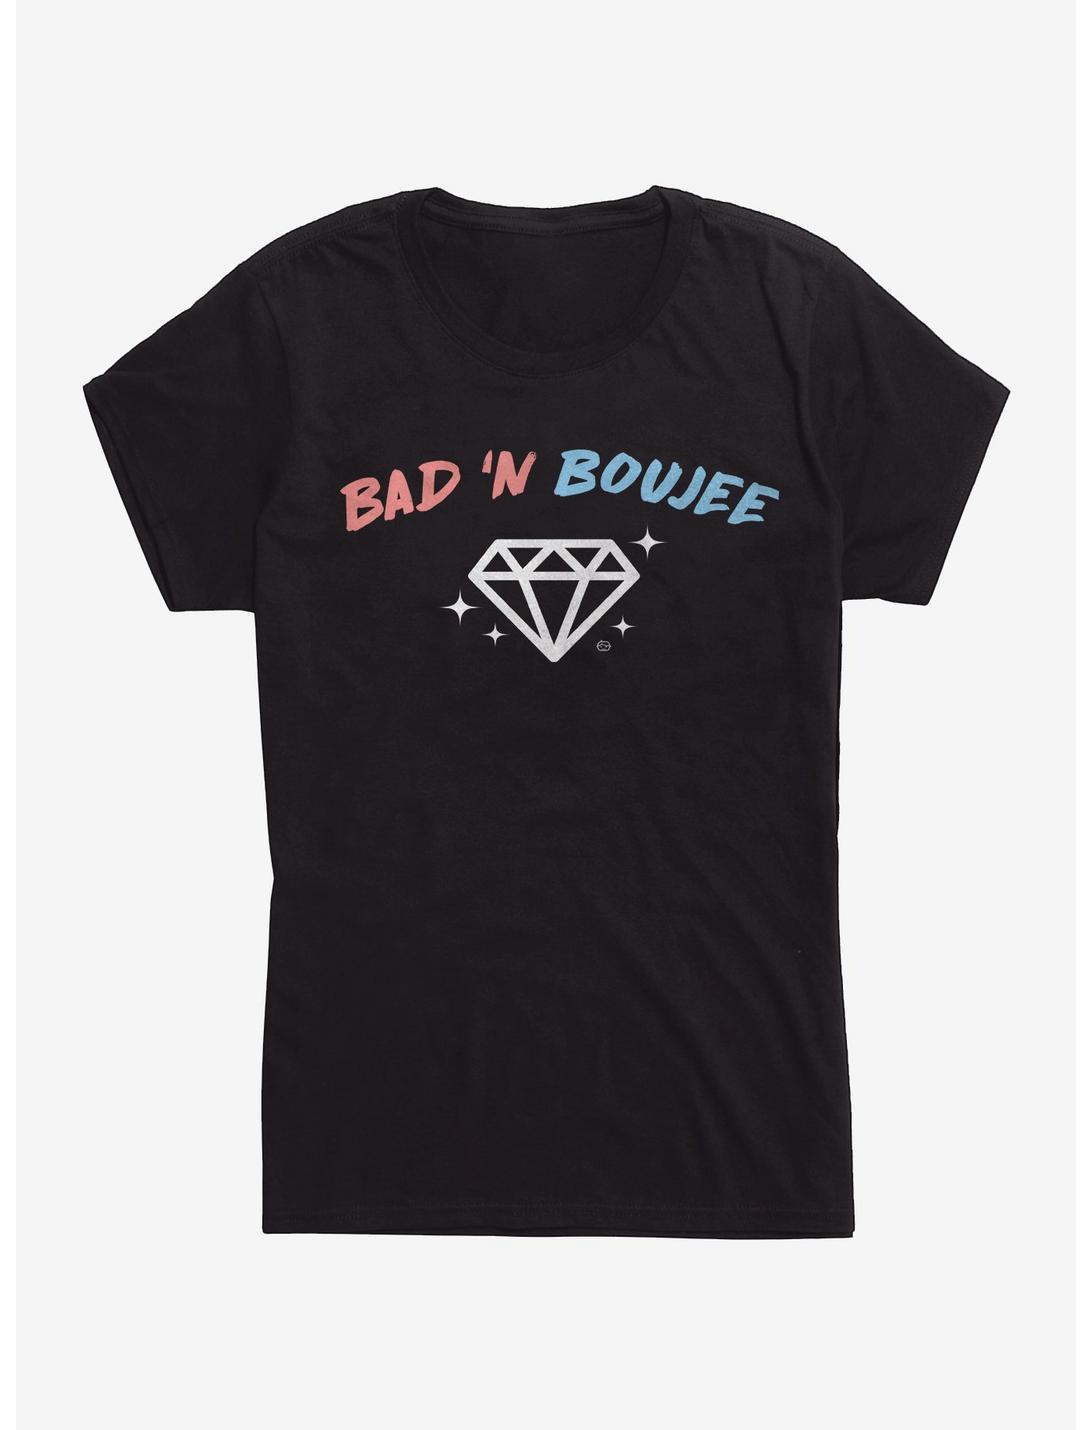 Bad N Boujee Womens T-Shirt, BLACK, hi-res